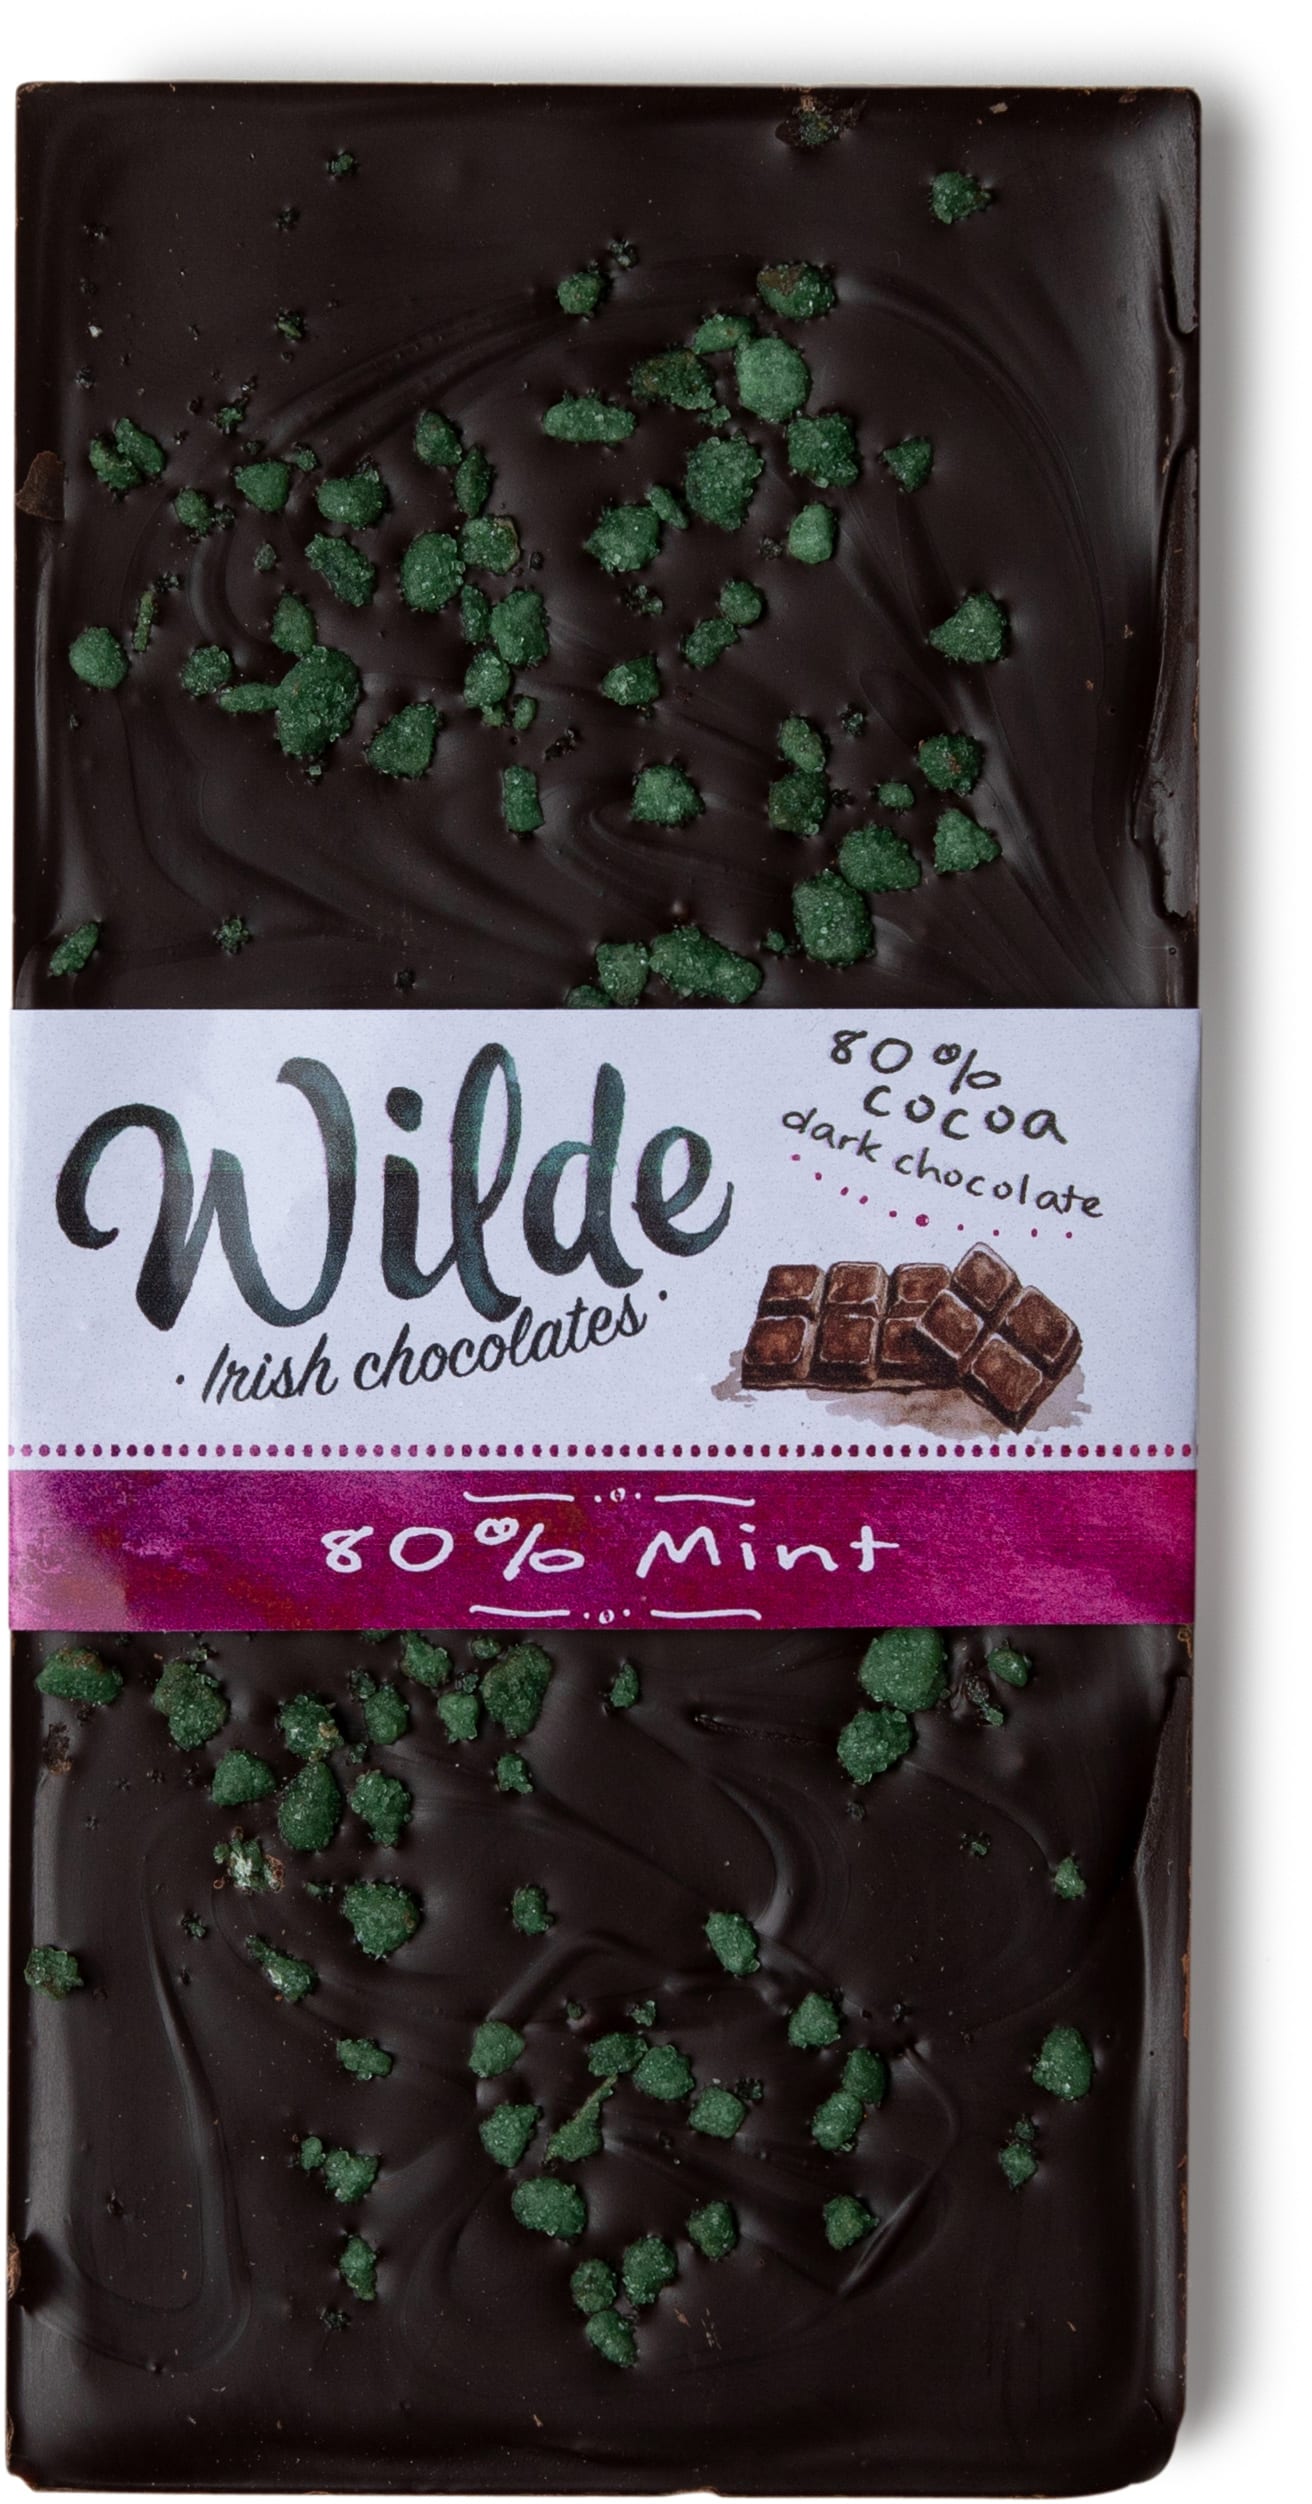 80% mint chocolate bar - Wilde Irish Chocolates